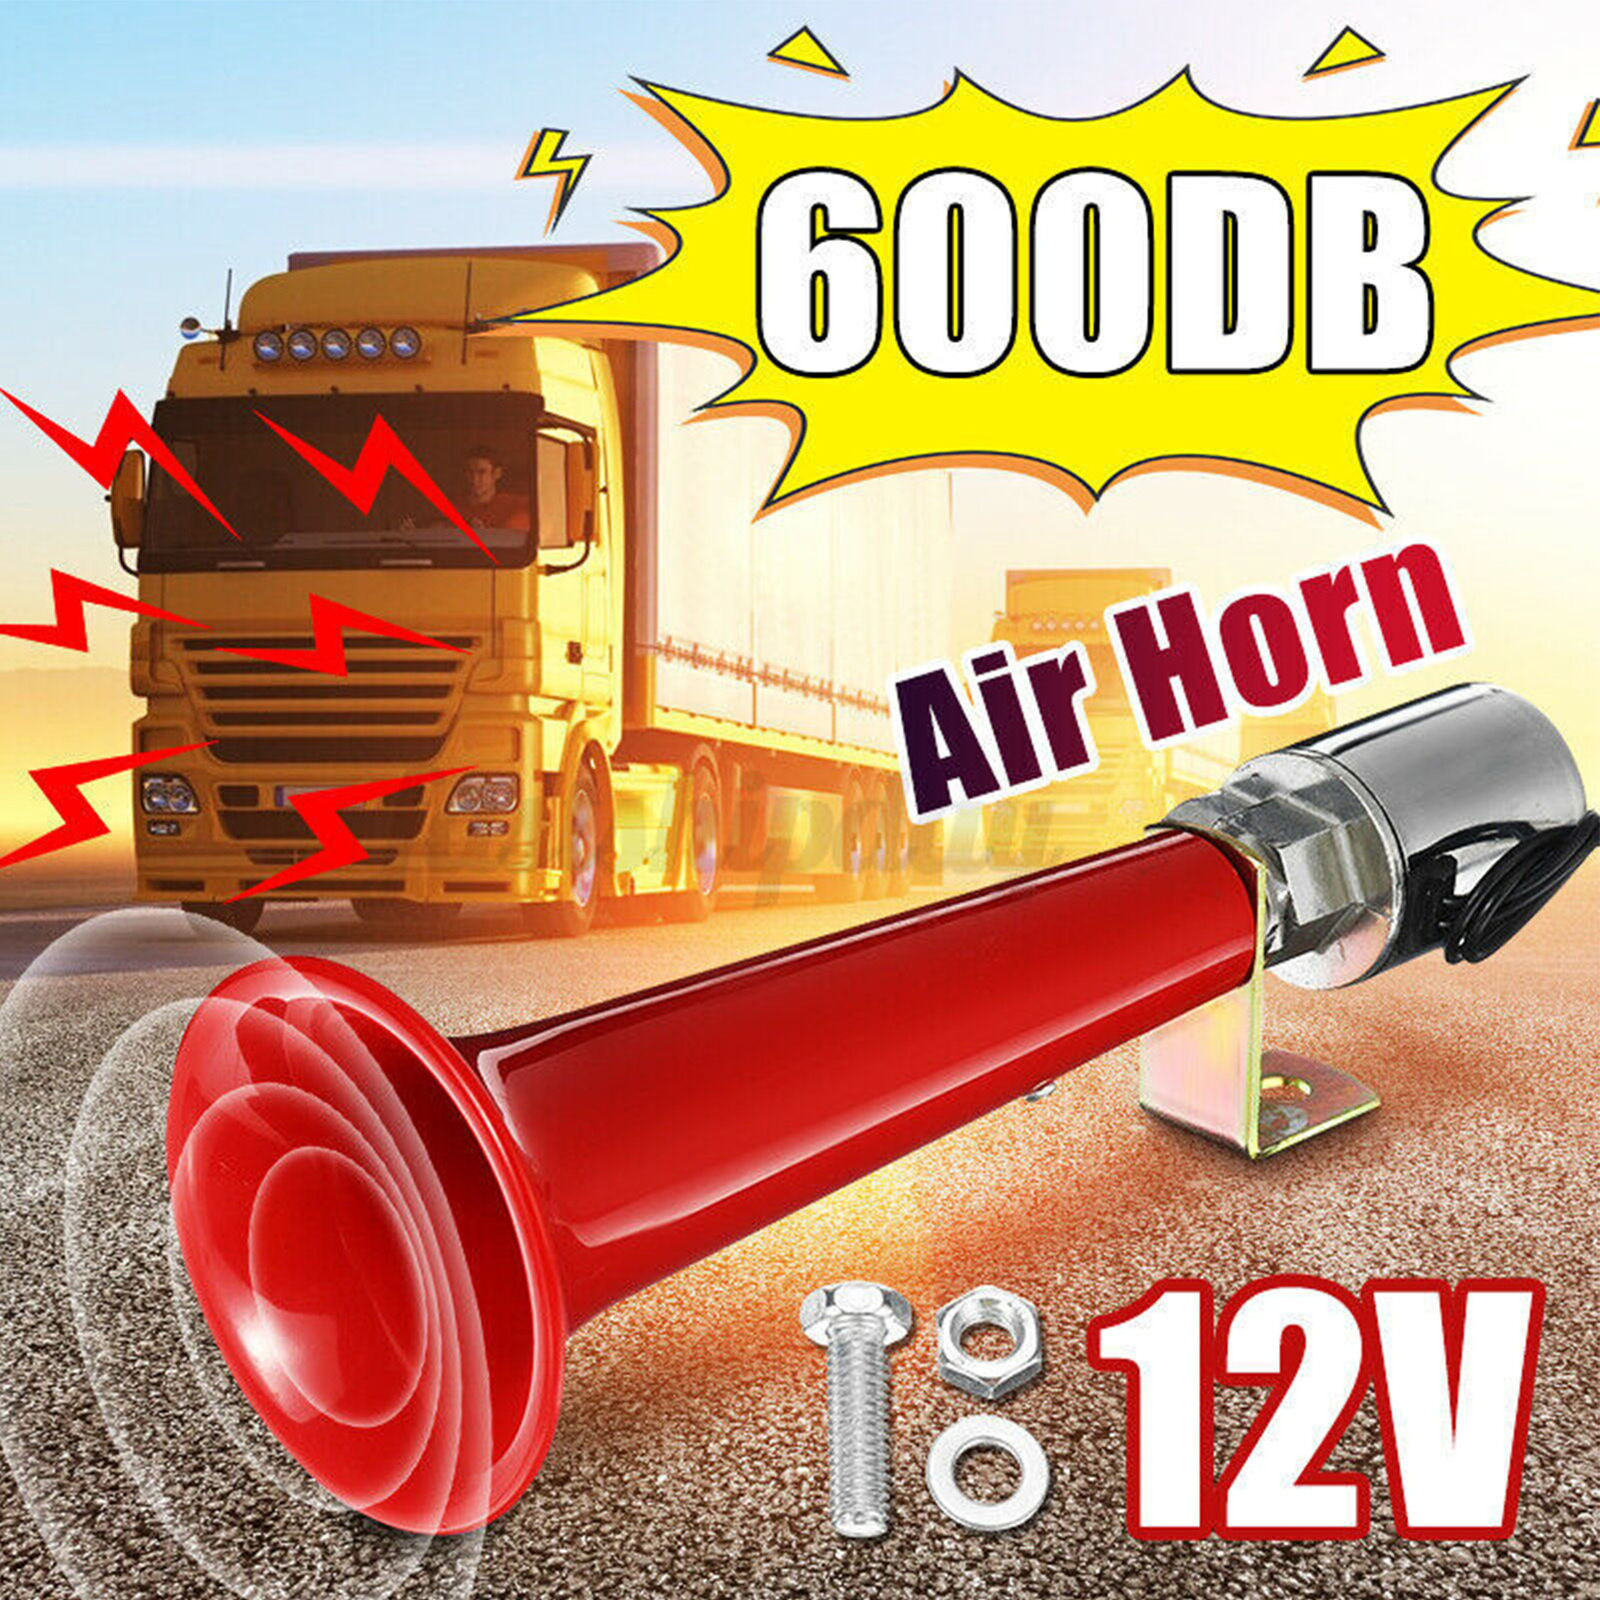 150DB Car Air Horn Compressor Kit Train Horn for Car Super Loud Car Horn